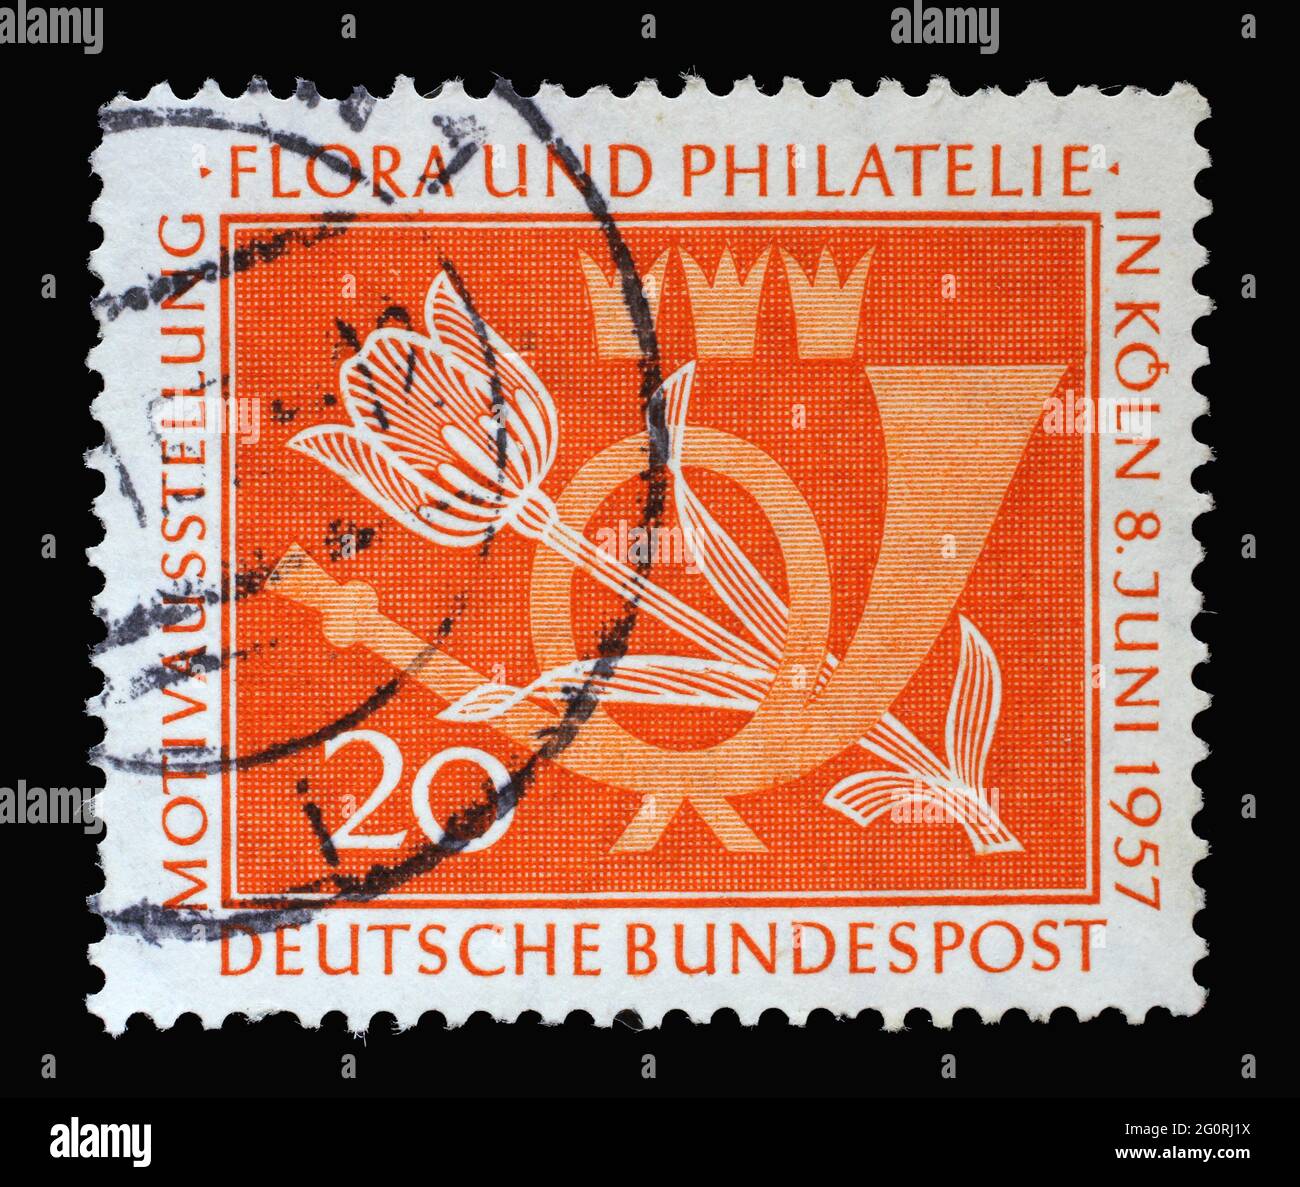 Stempel in Deutschland, zeigt ein Posthorn und eine Tulpe. Anlass ist die Motivausstellung Flora und Philatelie in Köln, um 1957 Stockfoto